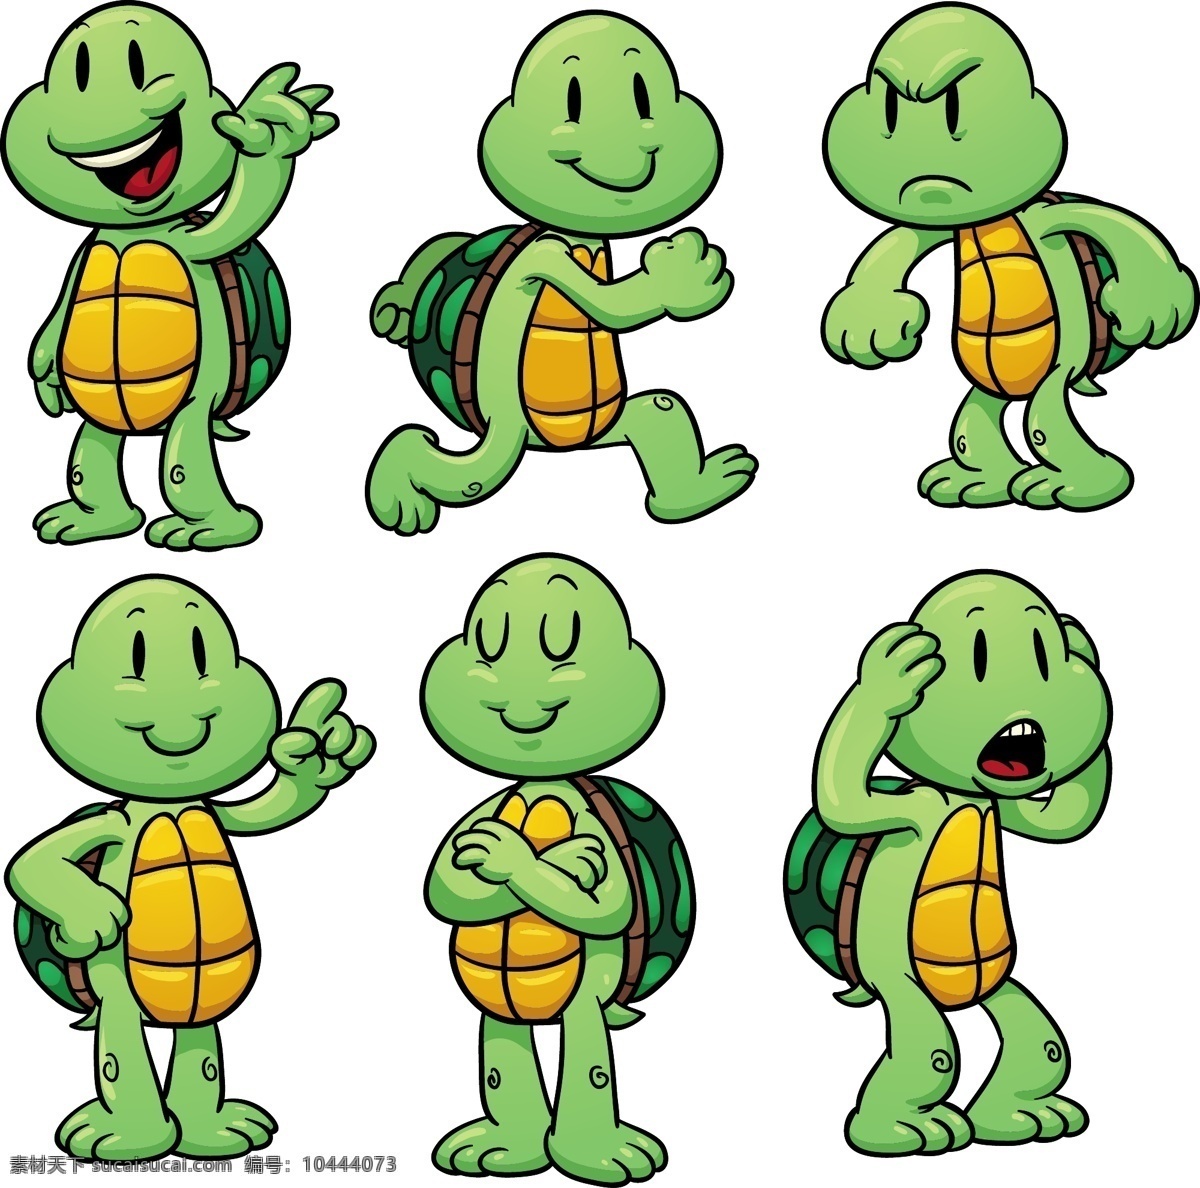 卡通乌龟 卡通 可爱小乌龟 卡通小乌龟 乌龟 动漫动画 动漫人物